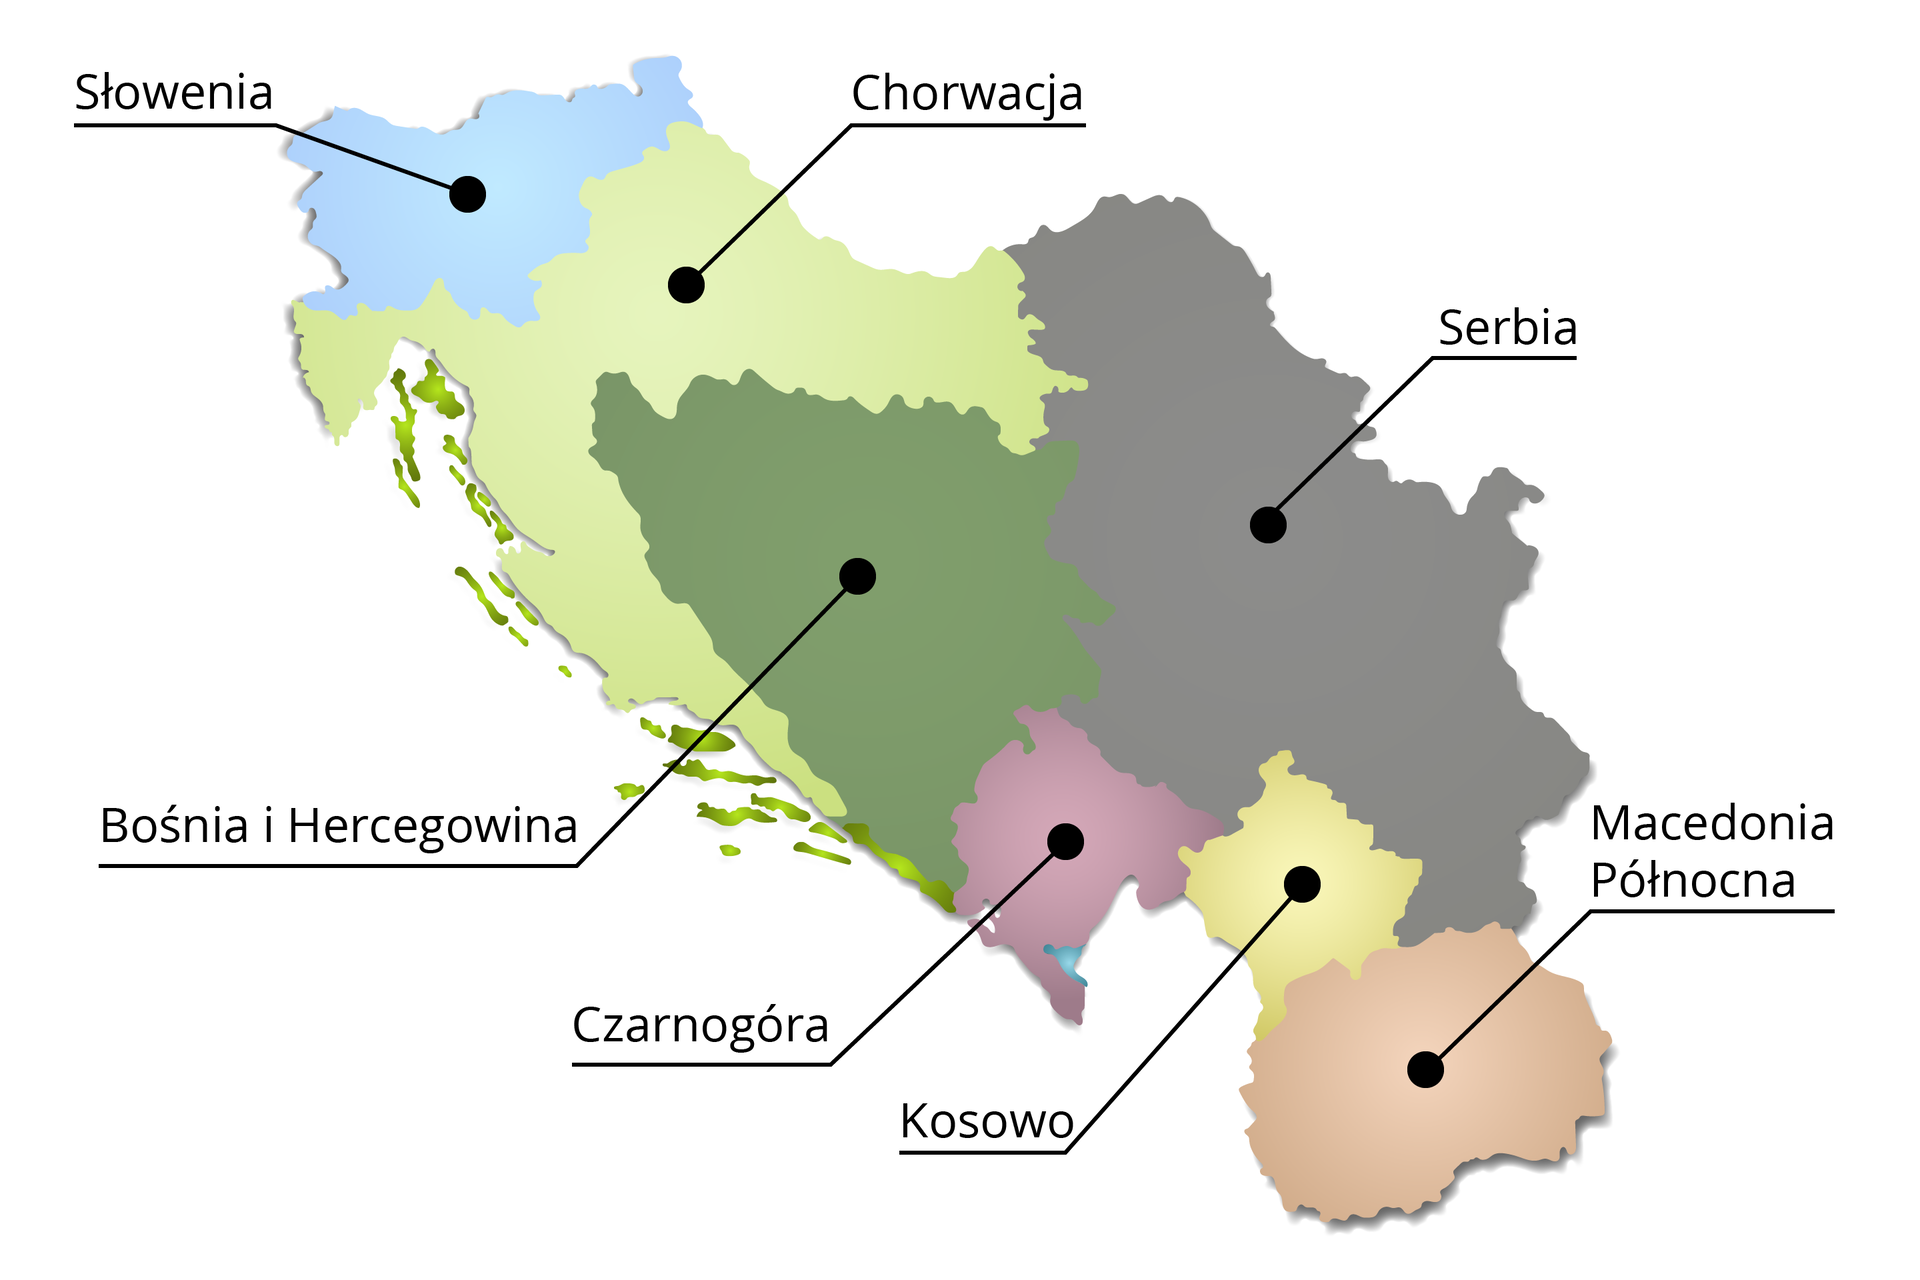 Mapa przedstawia część Europy, na której widnieje: Słowenia zaznaczona na błękitny kolor, Chorwacja – na jasnozielony, Bośnia i Hercegowina na ciemnozielony, Serbia na szary, Czarnogóra na różowy, Kosowo na żółty, Macedonia na beżowy. 